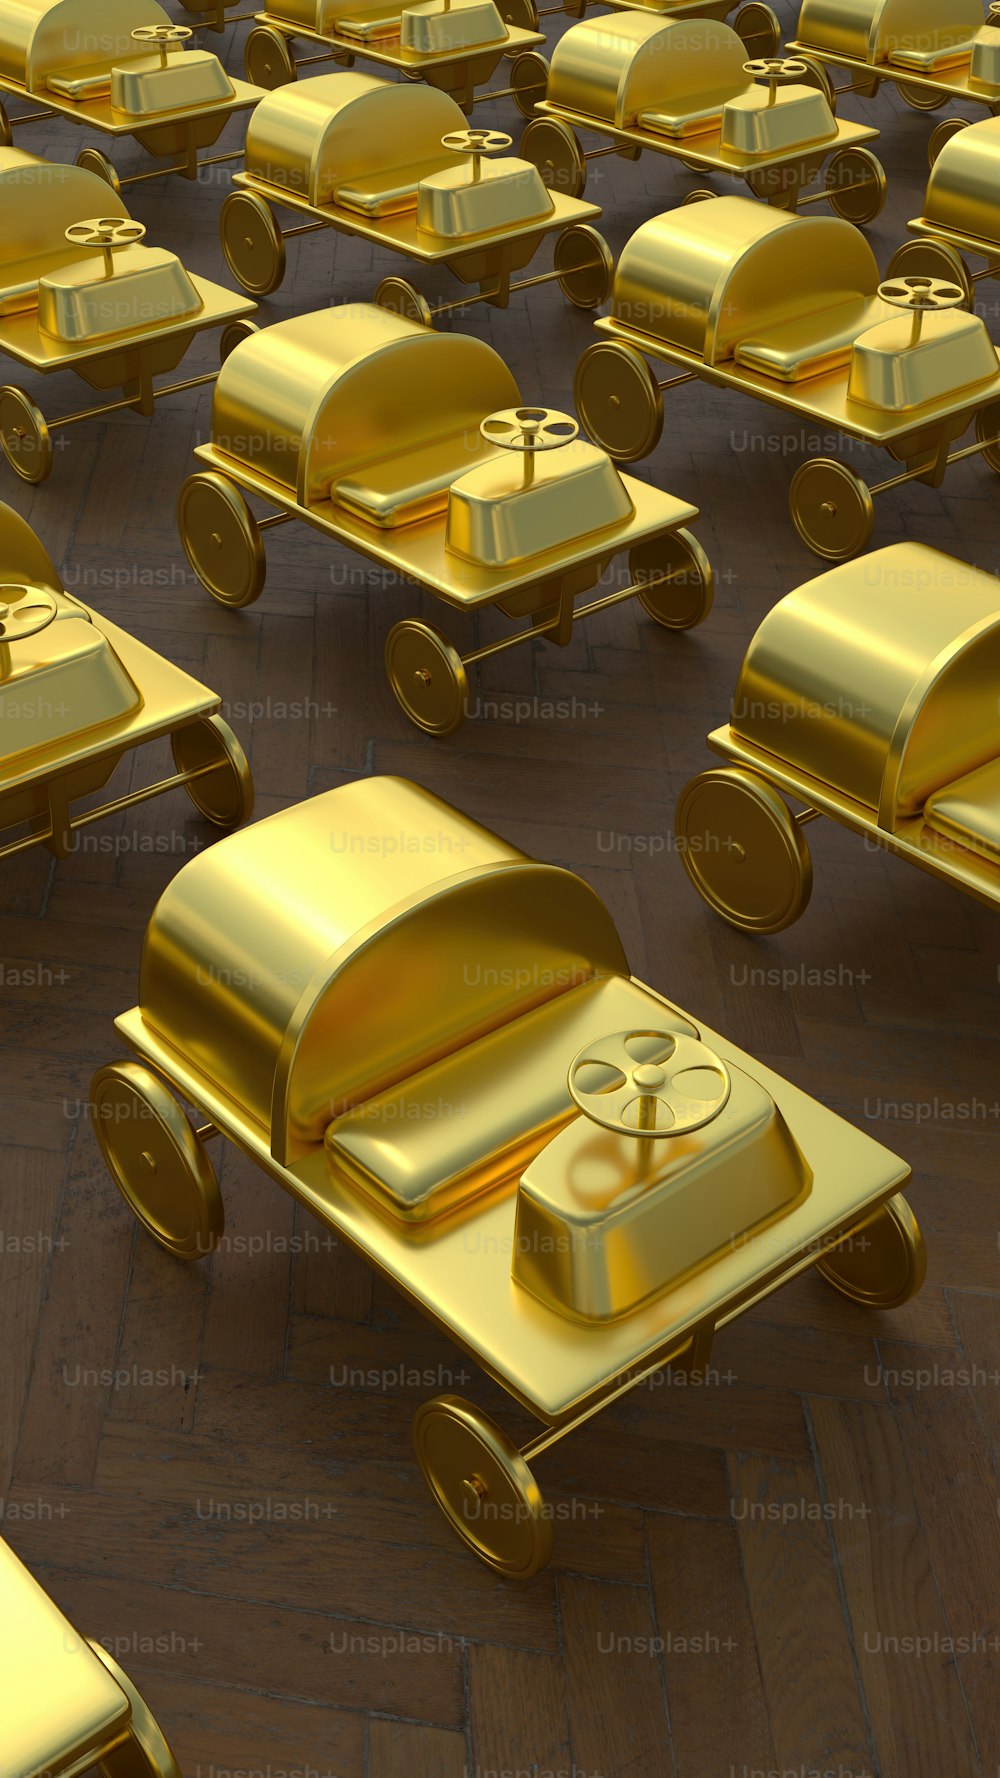 Un grand groupe de petites voitures dorées assises sur un plancher en bois